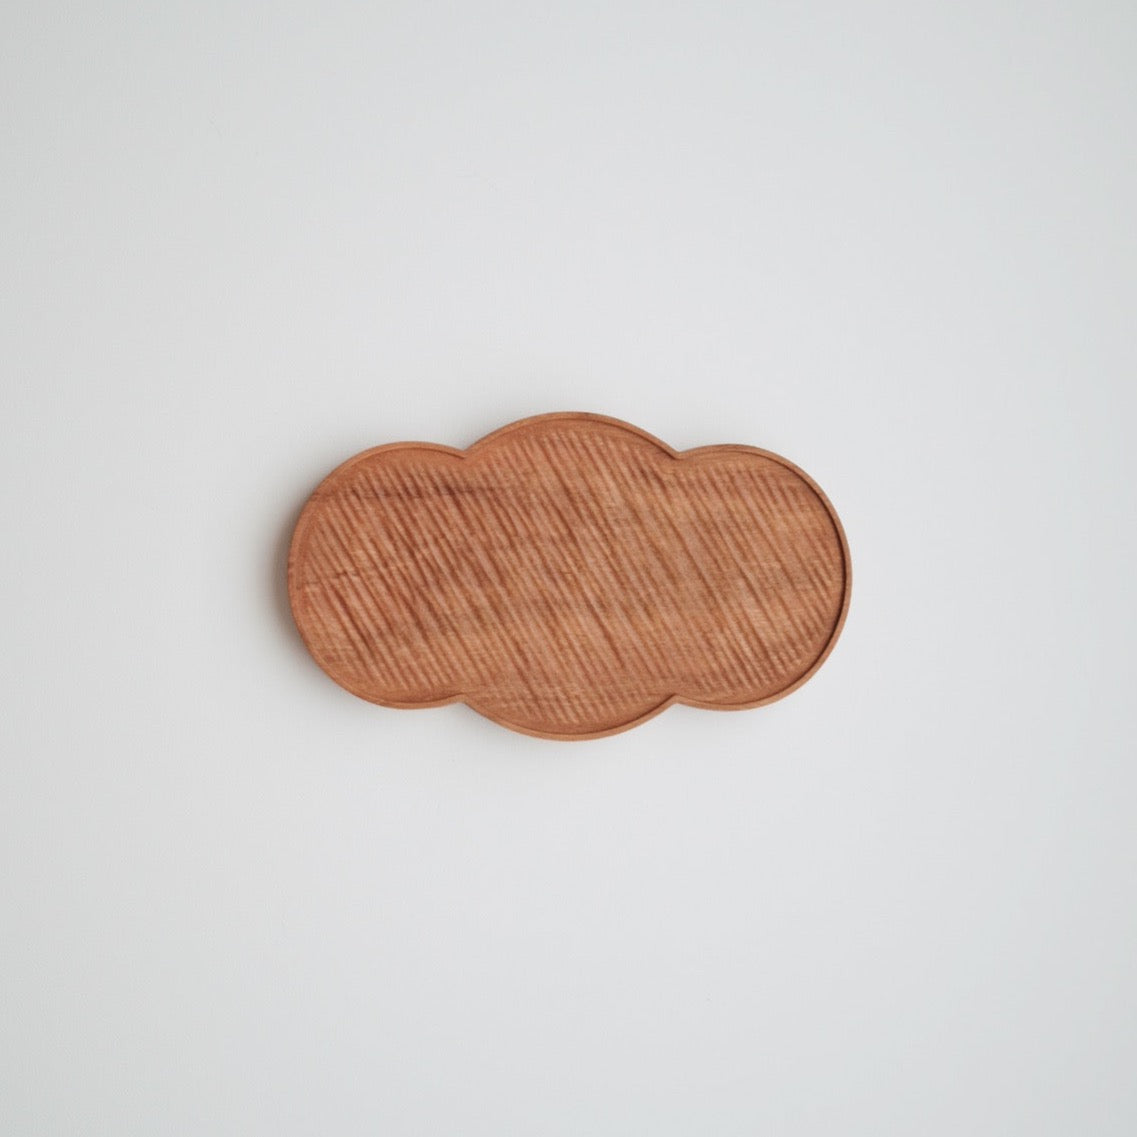 Cherry Wood Dessert Plate - Cloud